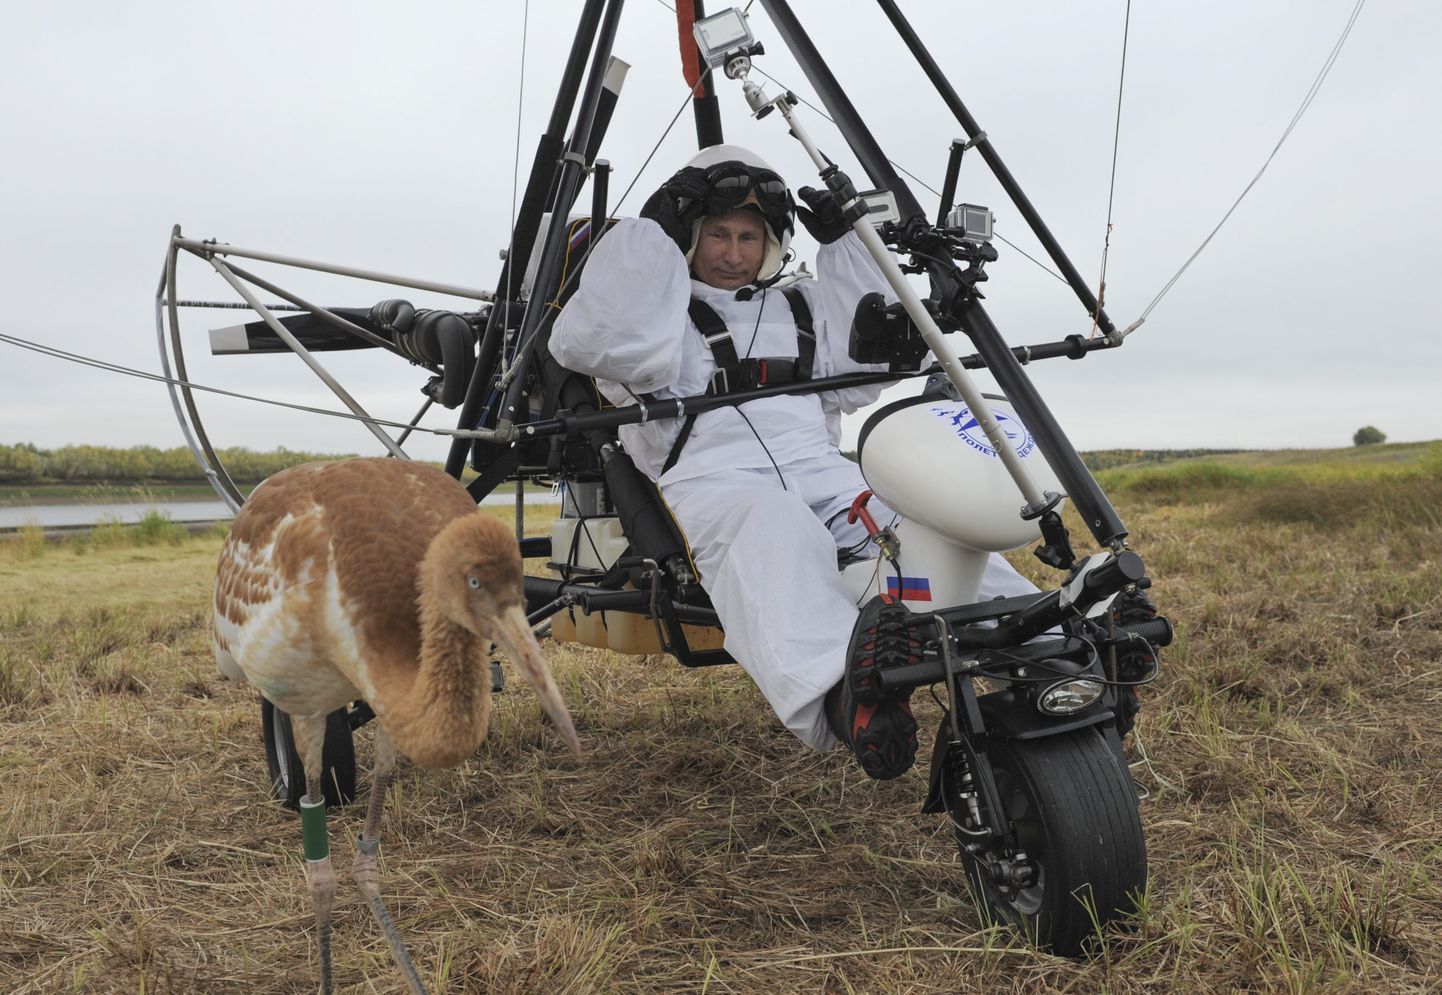 Venemaa president Vladimir Putin 2012. aastal riietus valgesse kostüümi ja tõusis deltaplaanil õhku, et vangistuses kasvanud kurgedele lendamist õpetada. Pilt on illustratiivne.